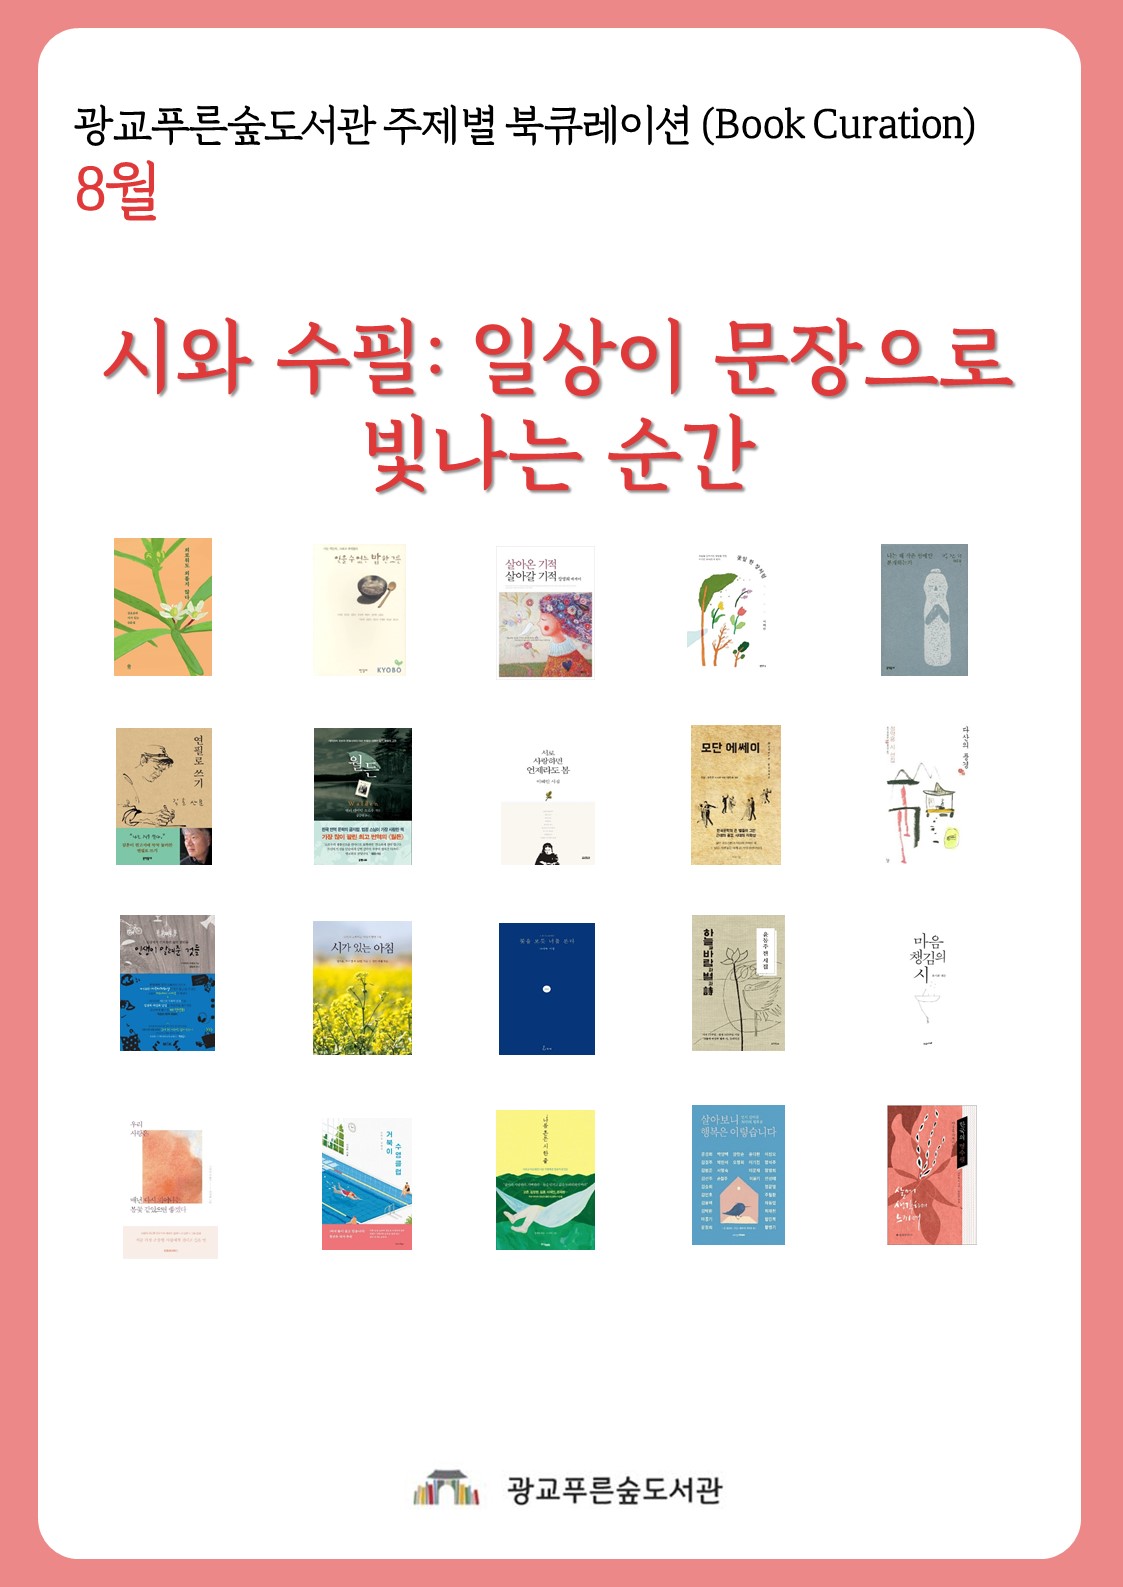 광교푸른숲도서관주제별북큐레이션안내문(8월).jpg